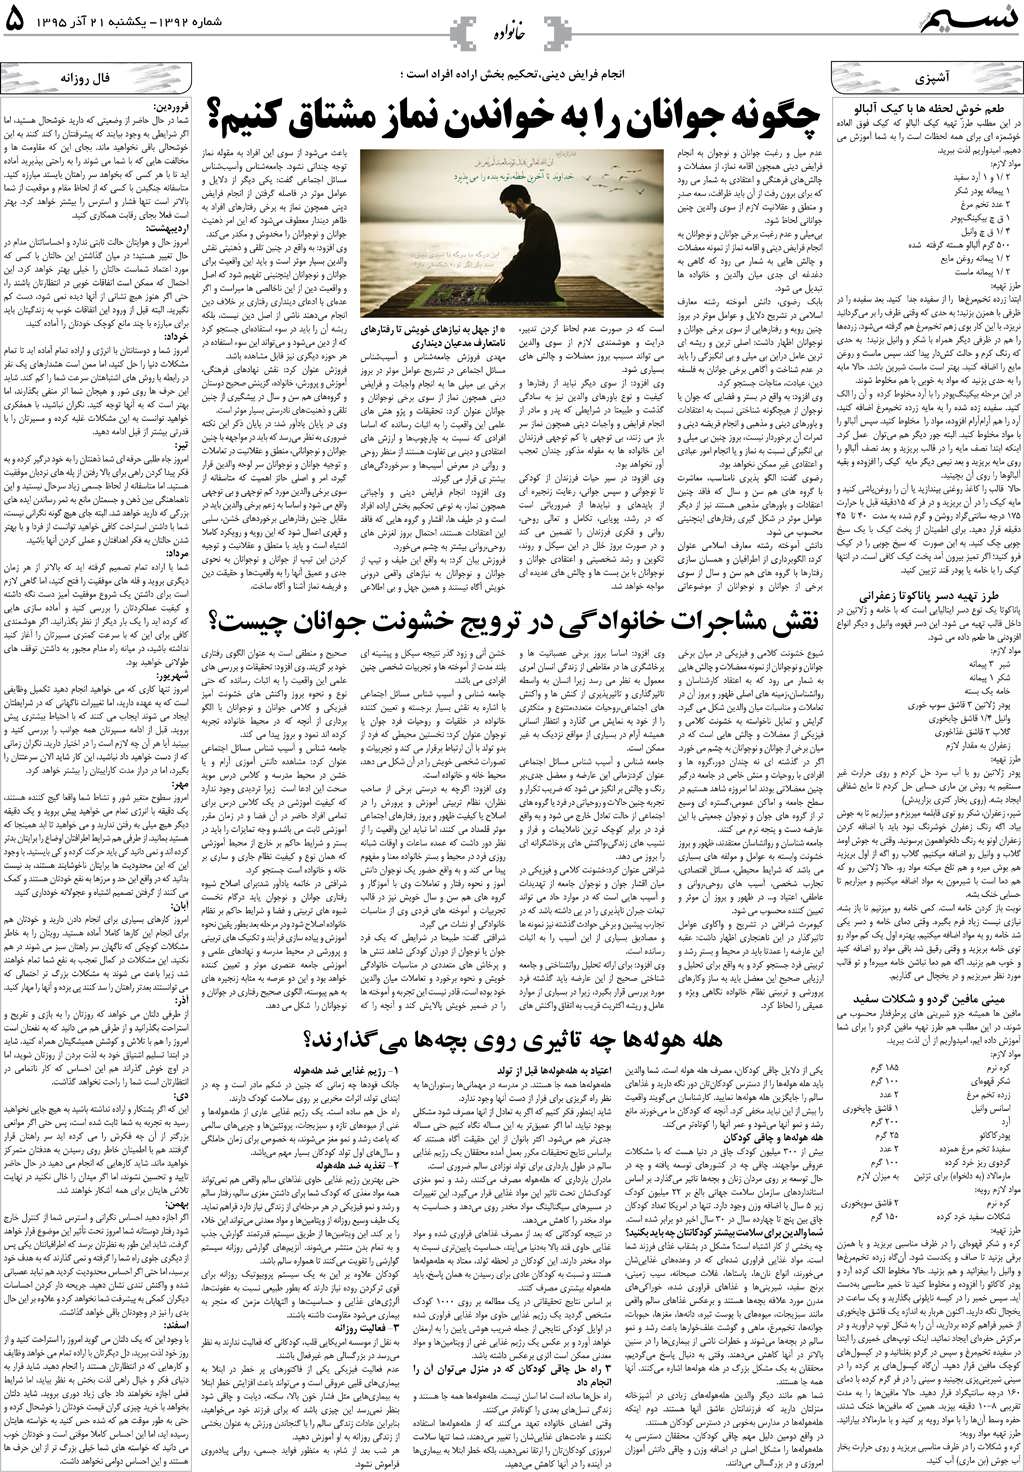 صفحه خانواده روزنامه نسیم شماره 1392